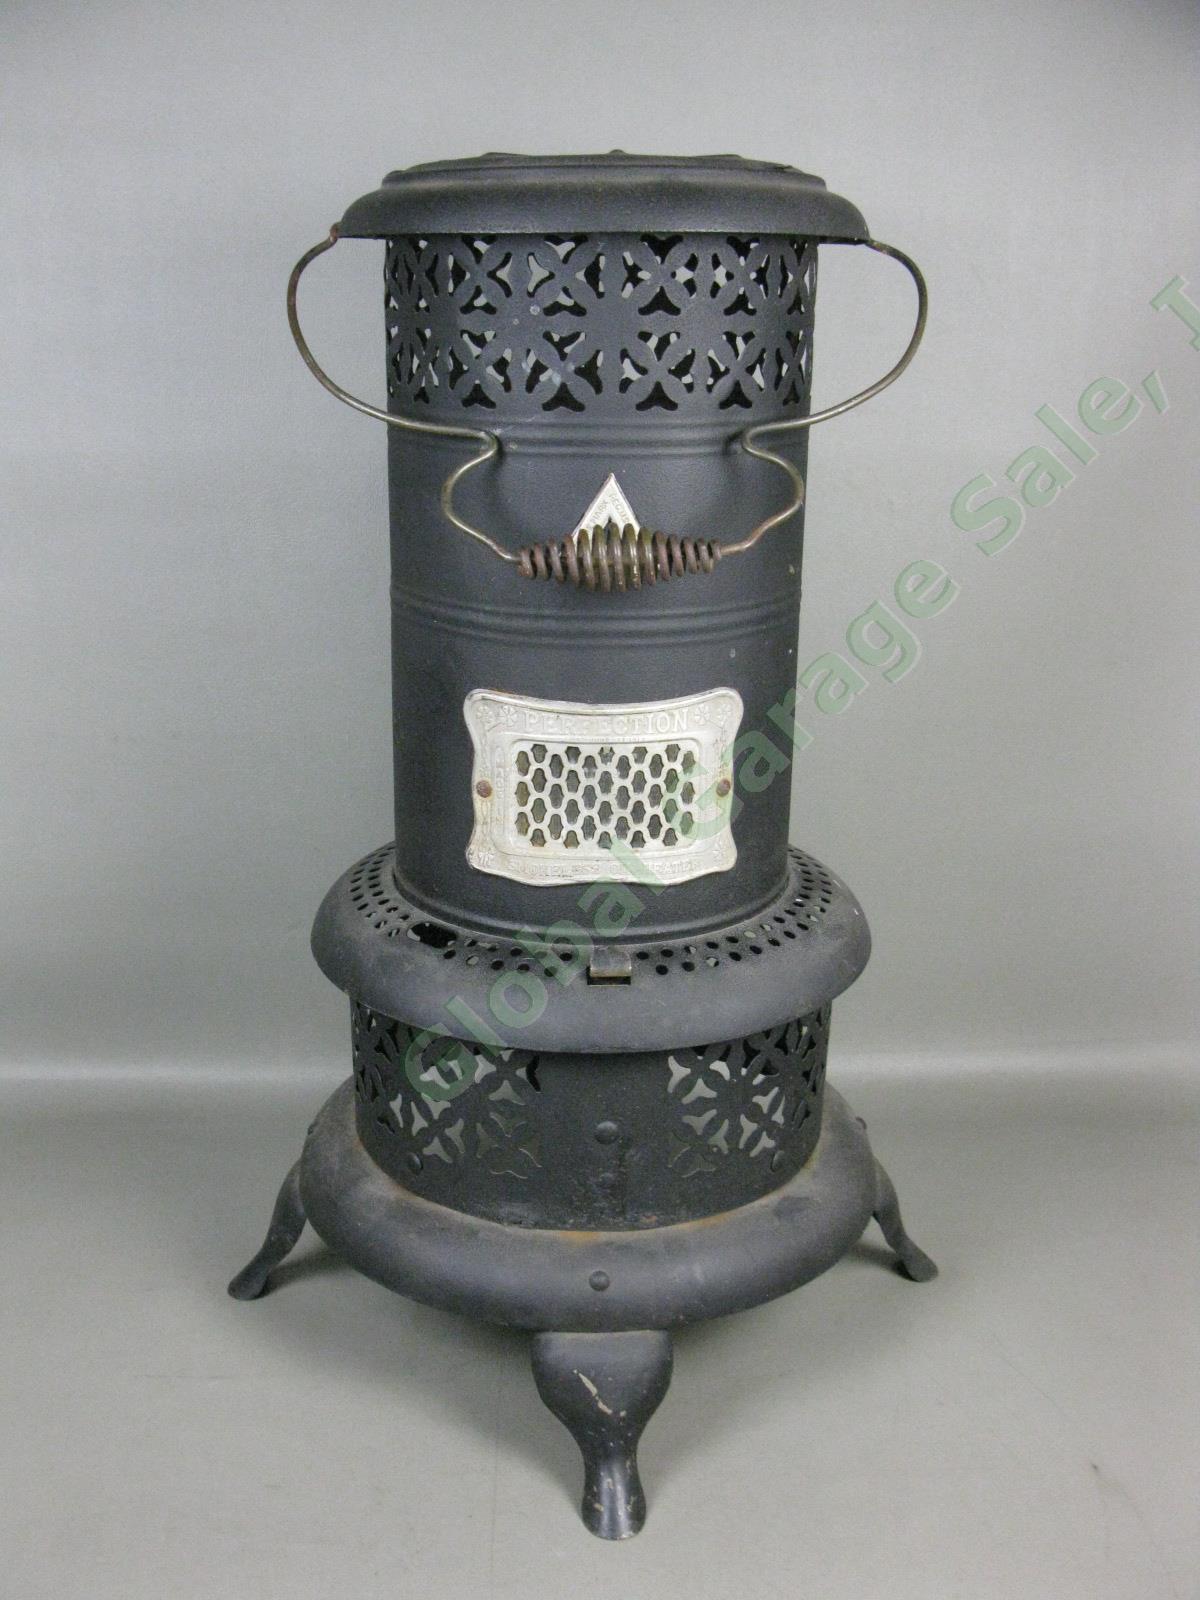 Vtg Antique Perfection Model Smokeless Kerosene Oil Heater Cabin Parlor Stove NR